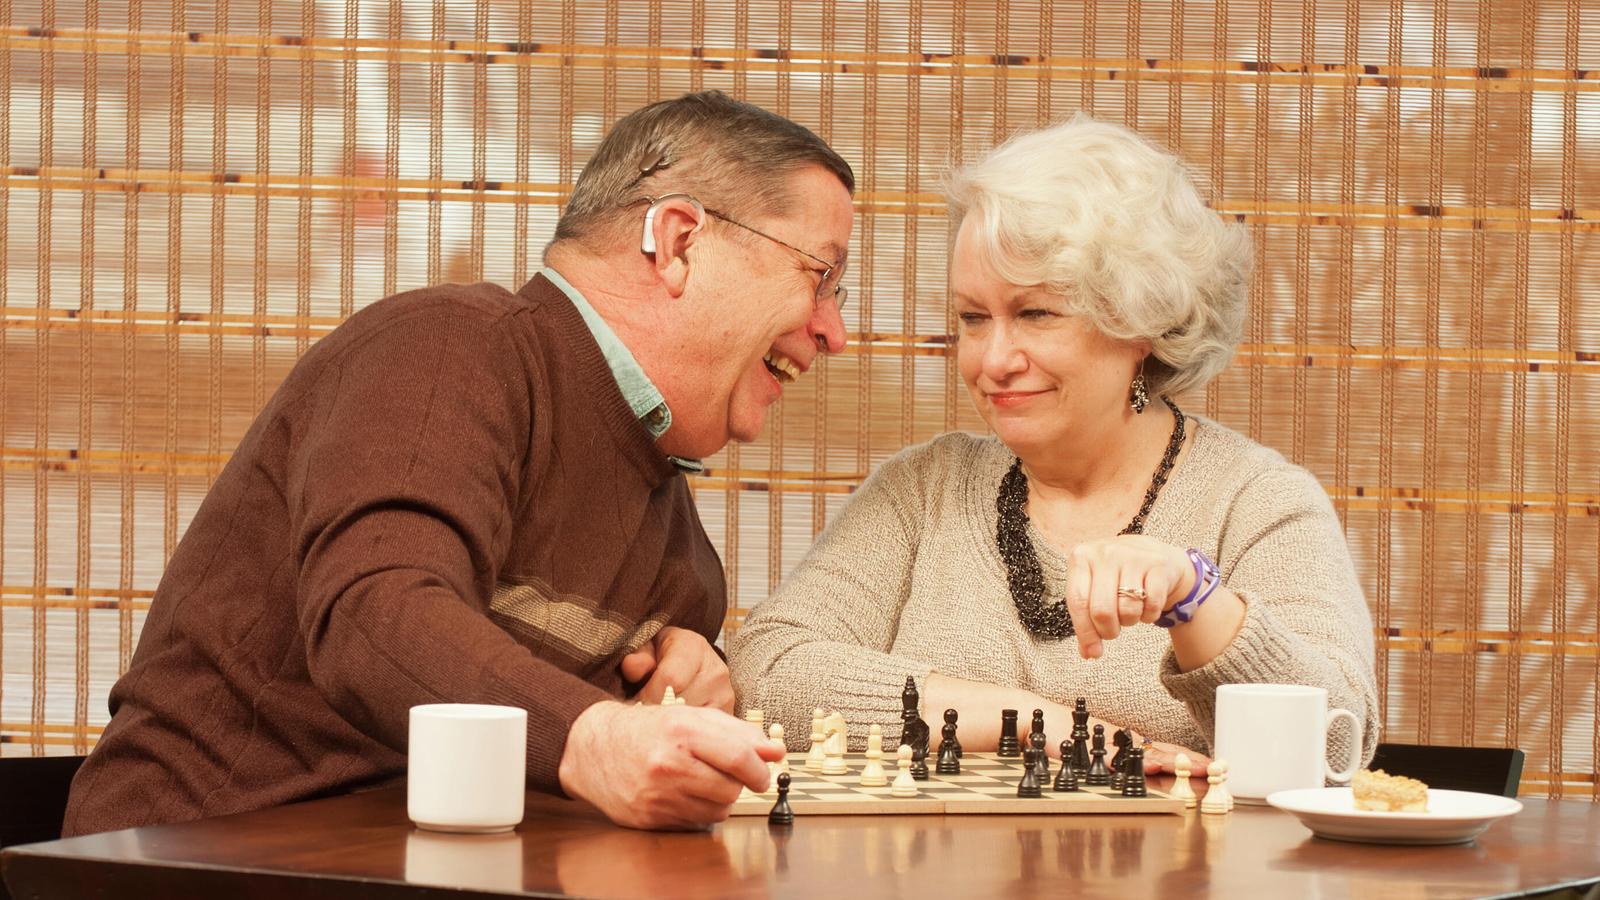 Az implantátumot viselő Bill és felesége Pam sakkozással szórakoztatják magukat